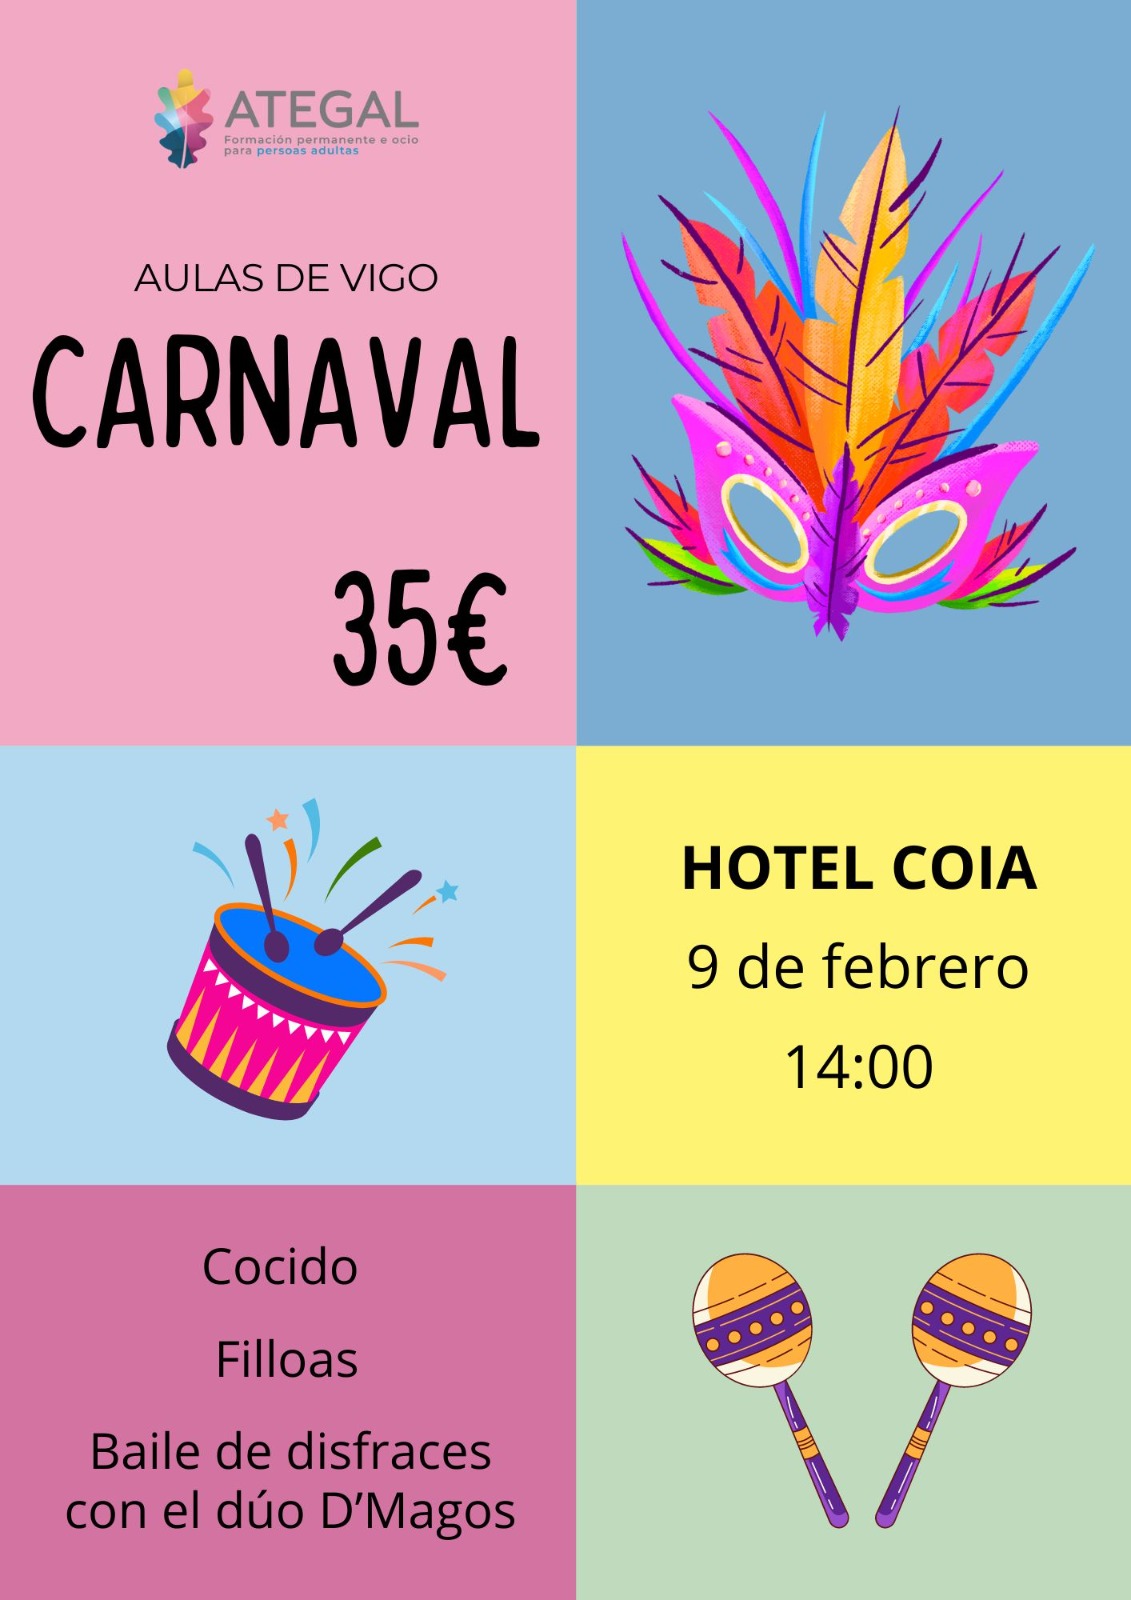 Carnaval en Ategal Vigo